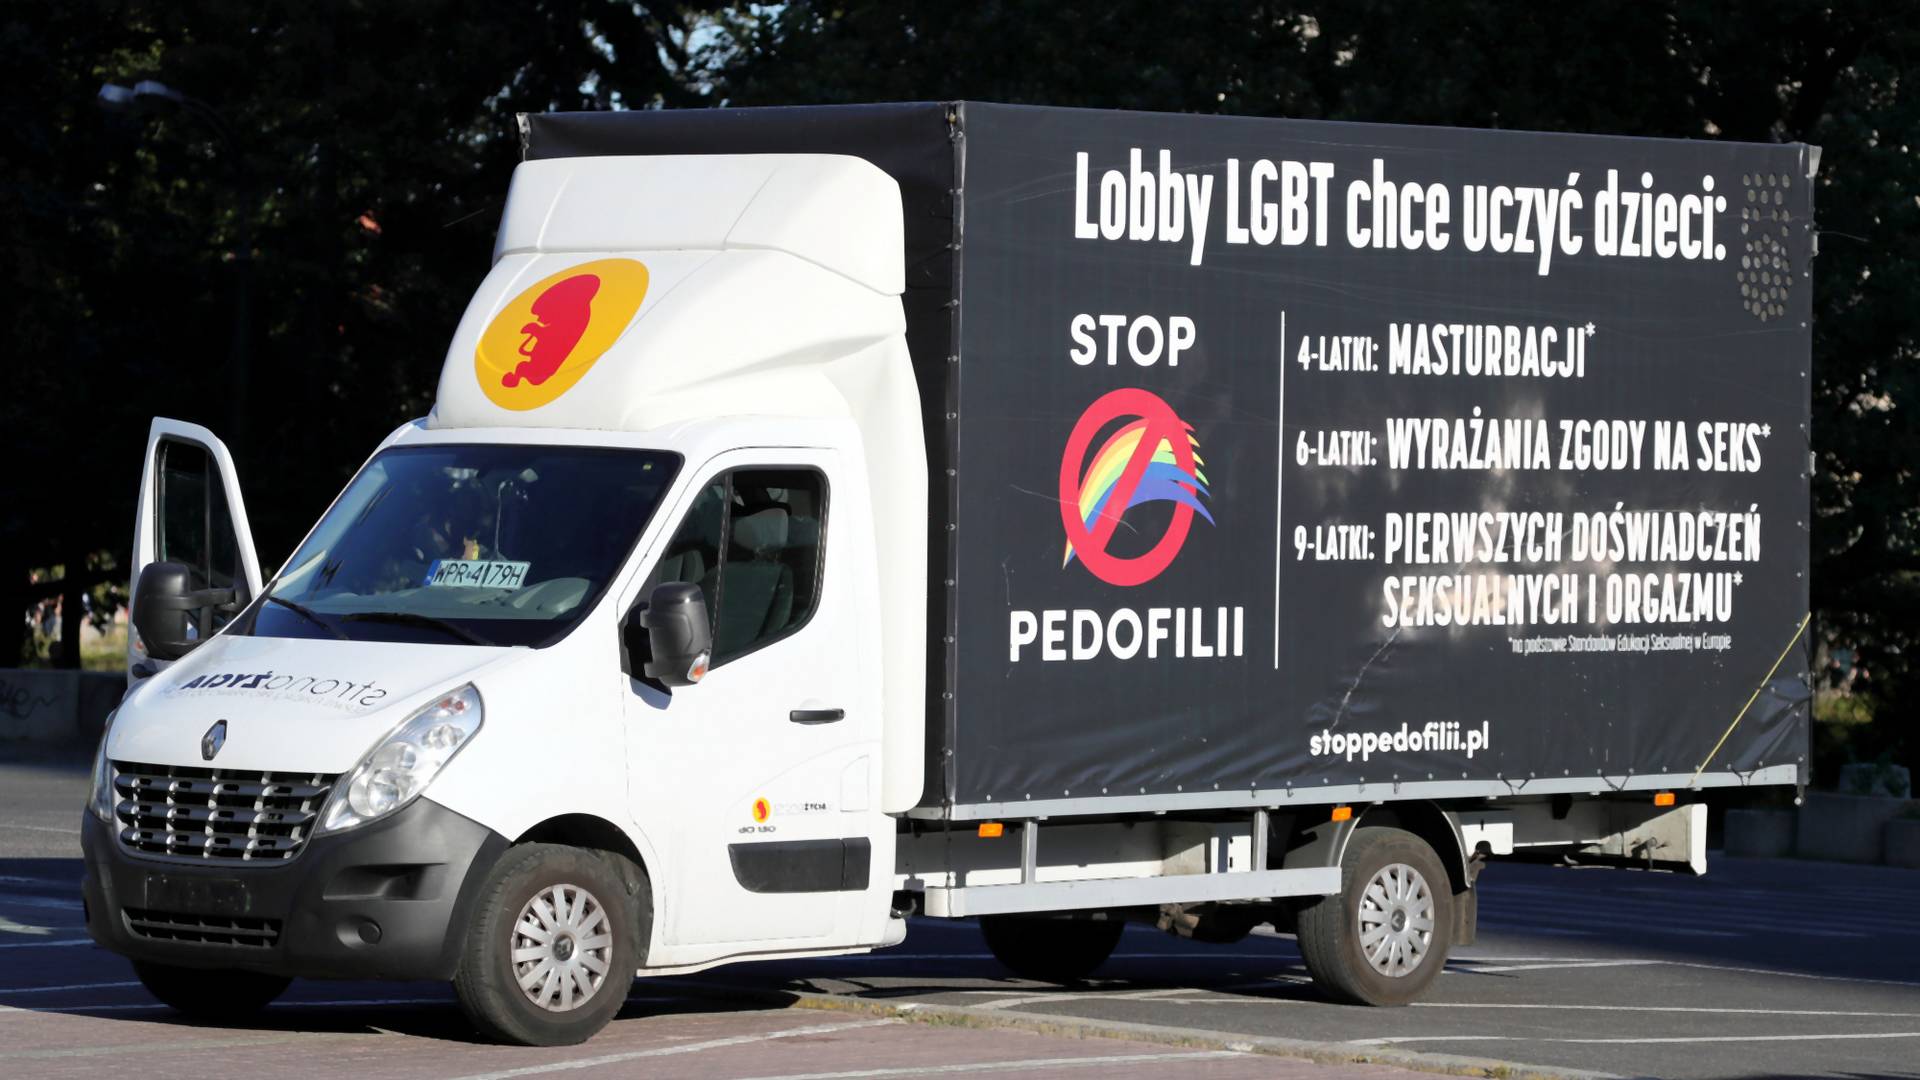 Homofobiczna furgonetka w Krakowie była chroniona przez policję jako zgromadzenie publiczne